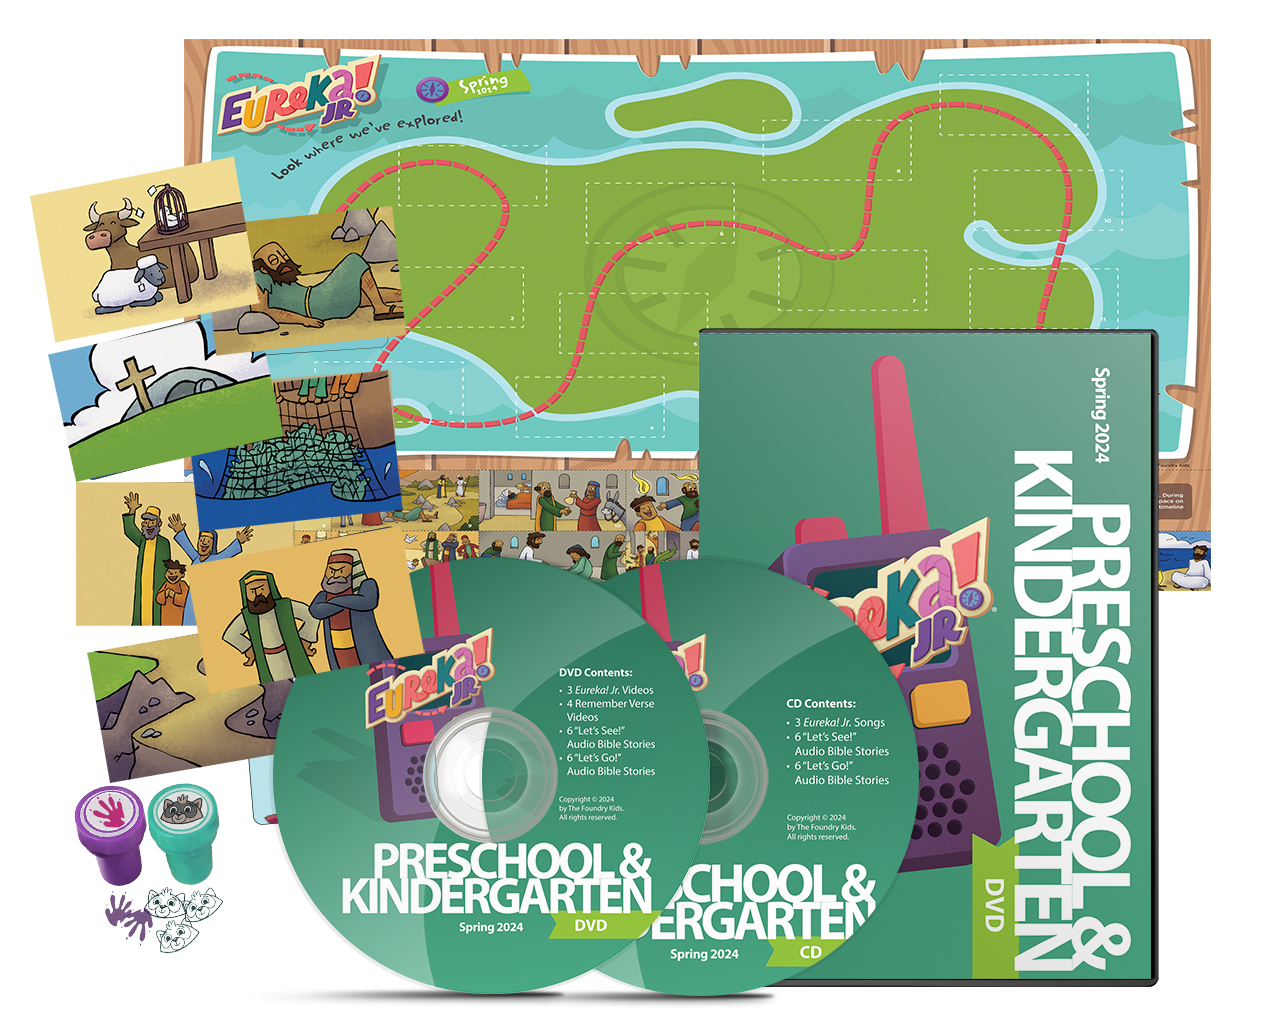 Preschool & Kindergarten Expedition Resources